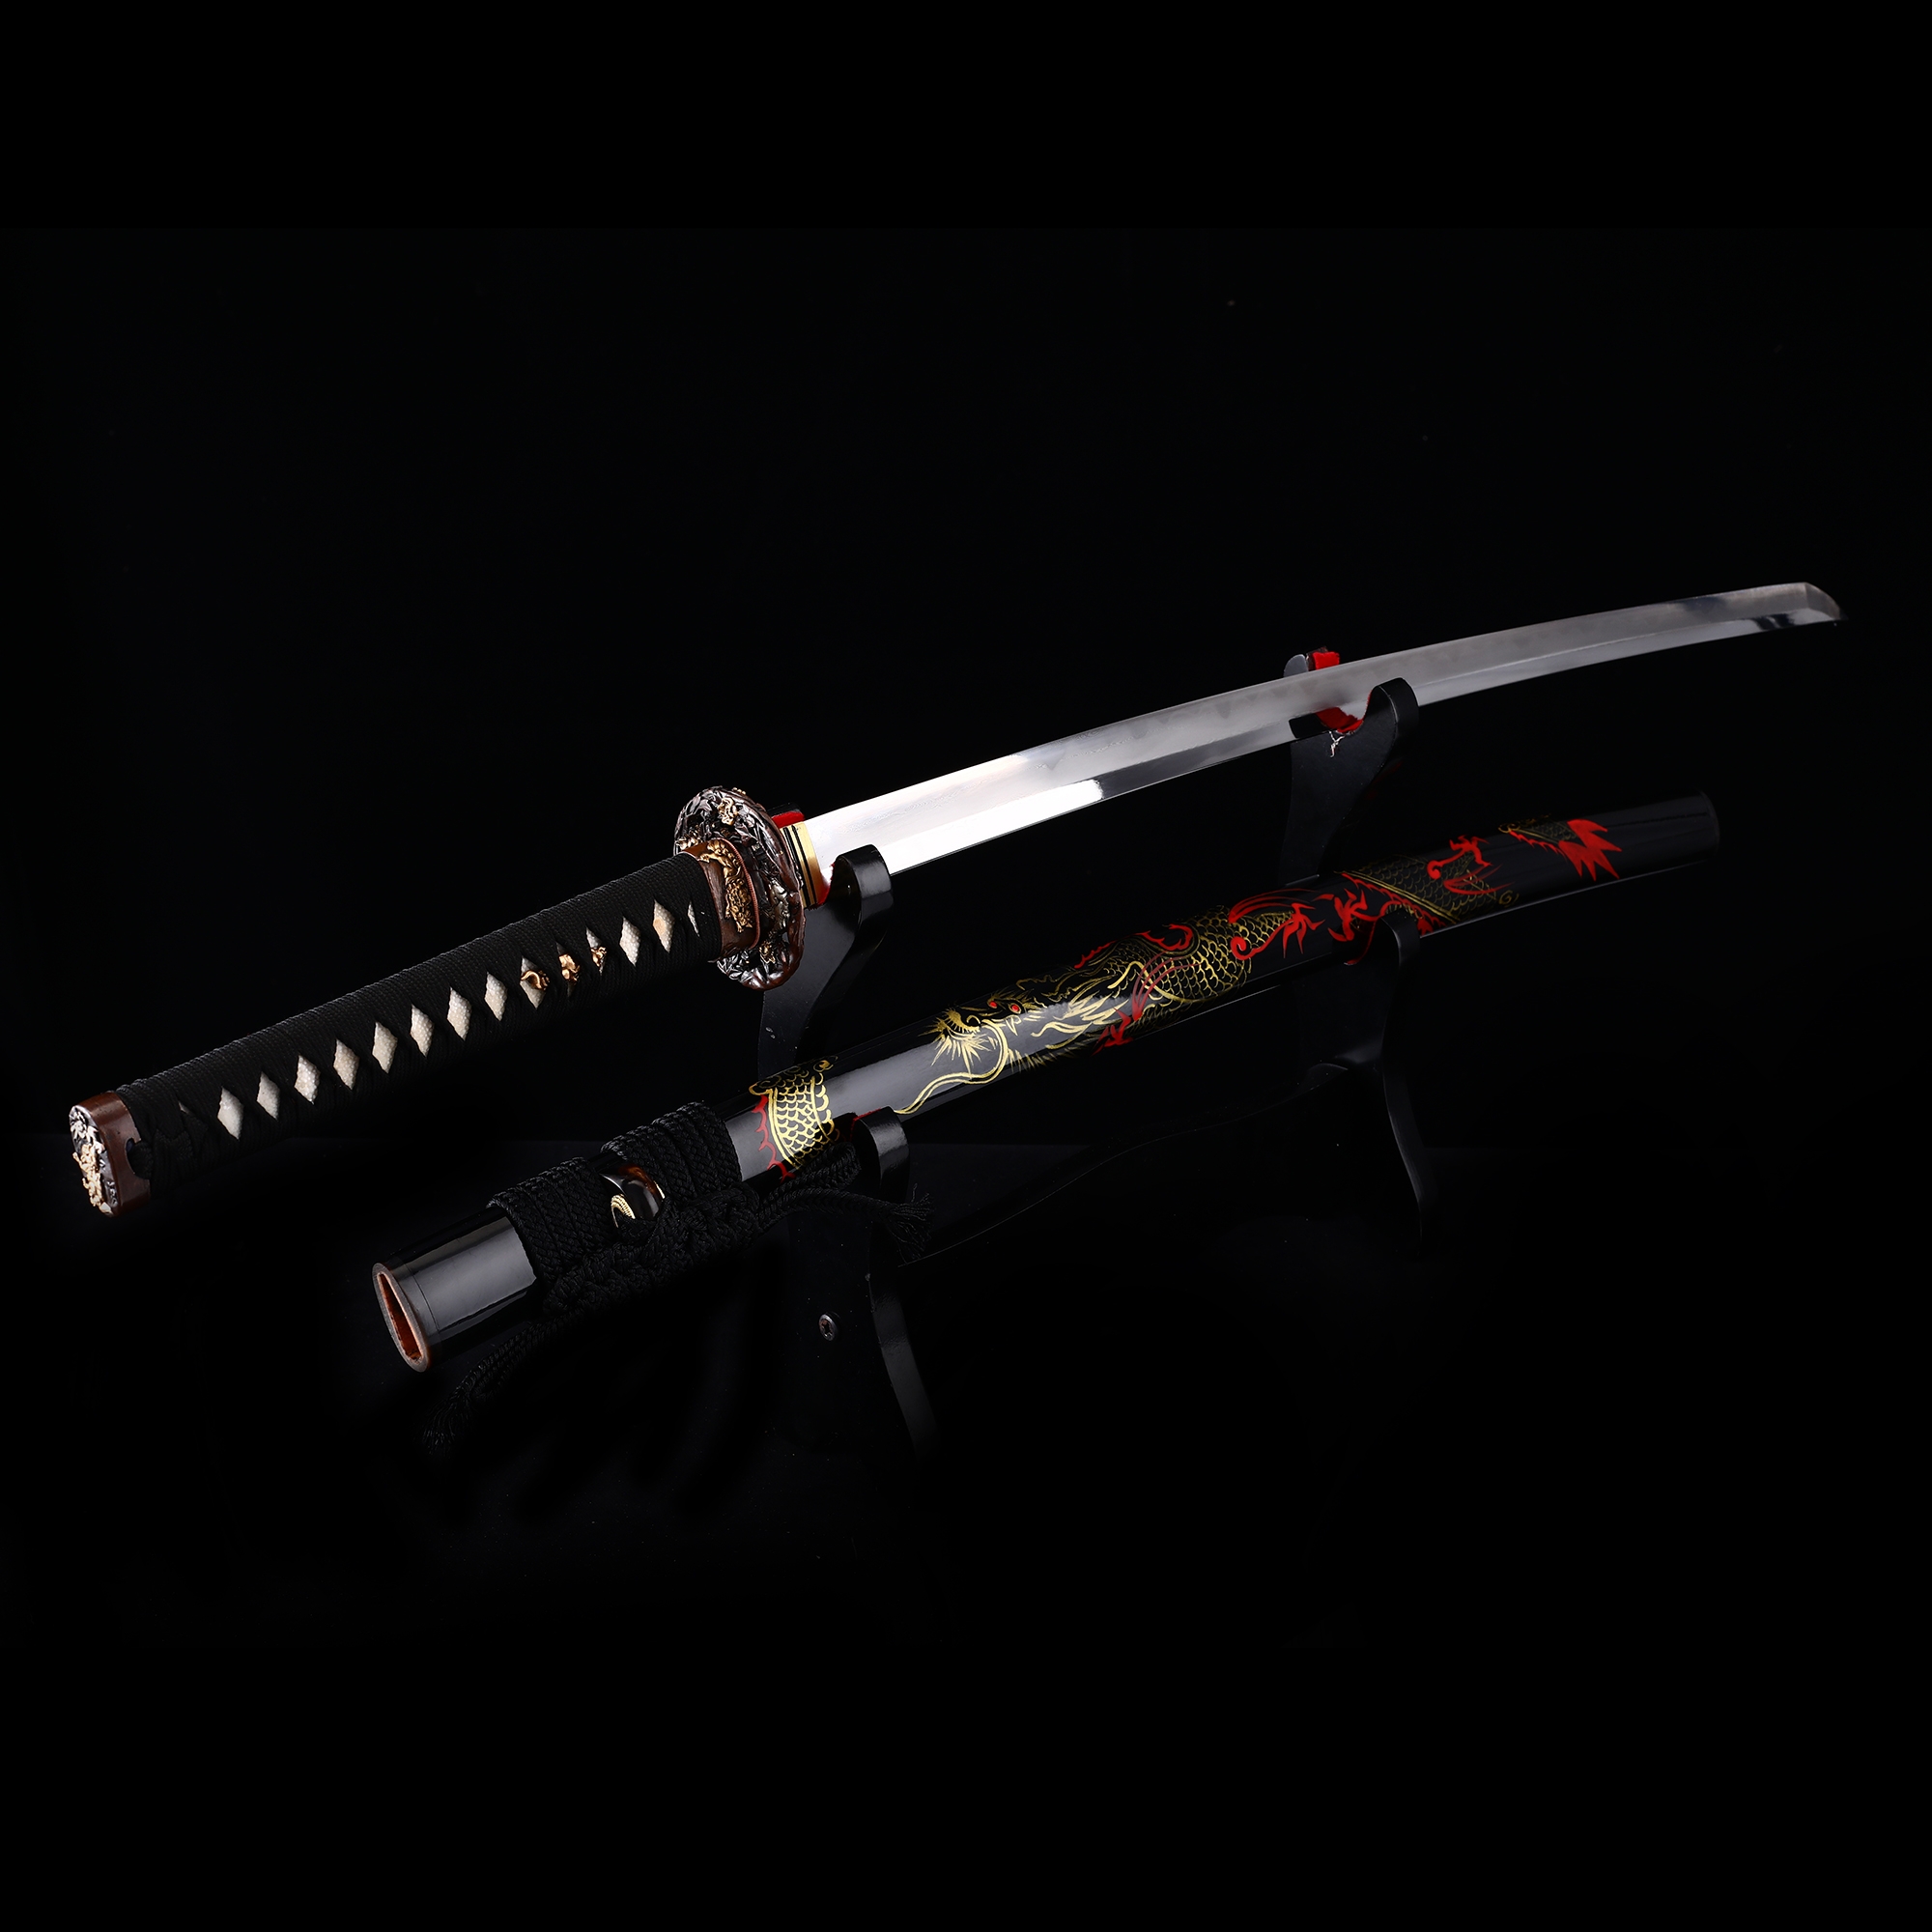 39.37" High Quality High Manganese Steel Japan Samurai Sword Katana Razor Sharp 